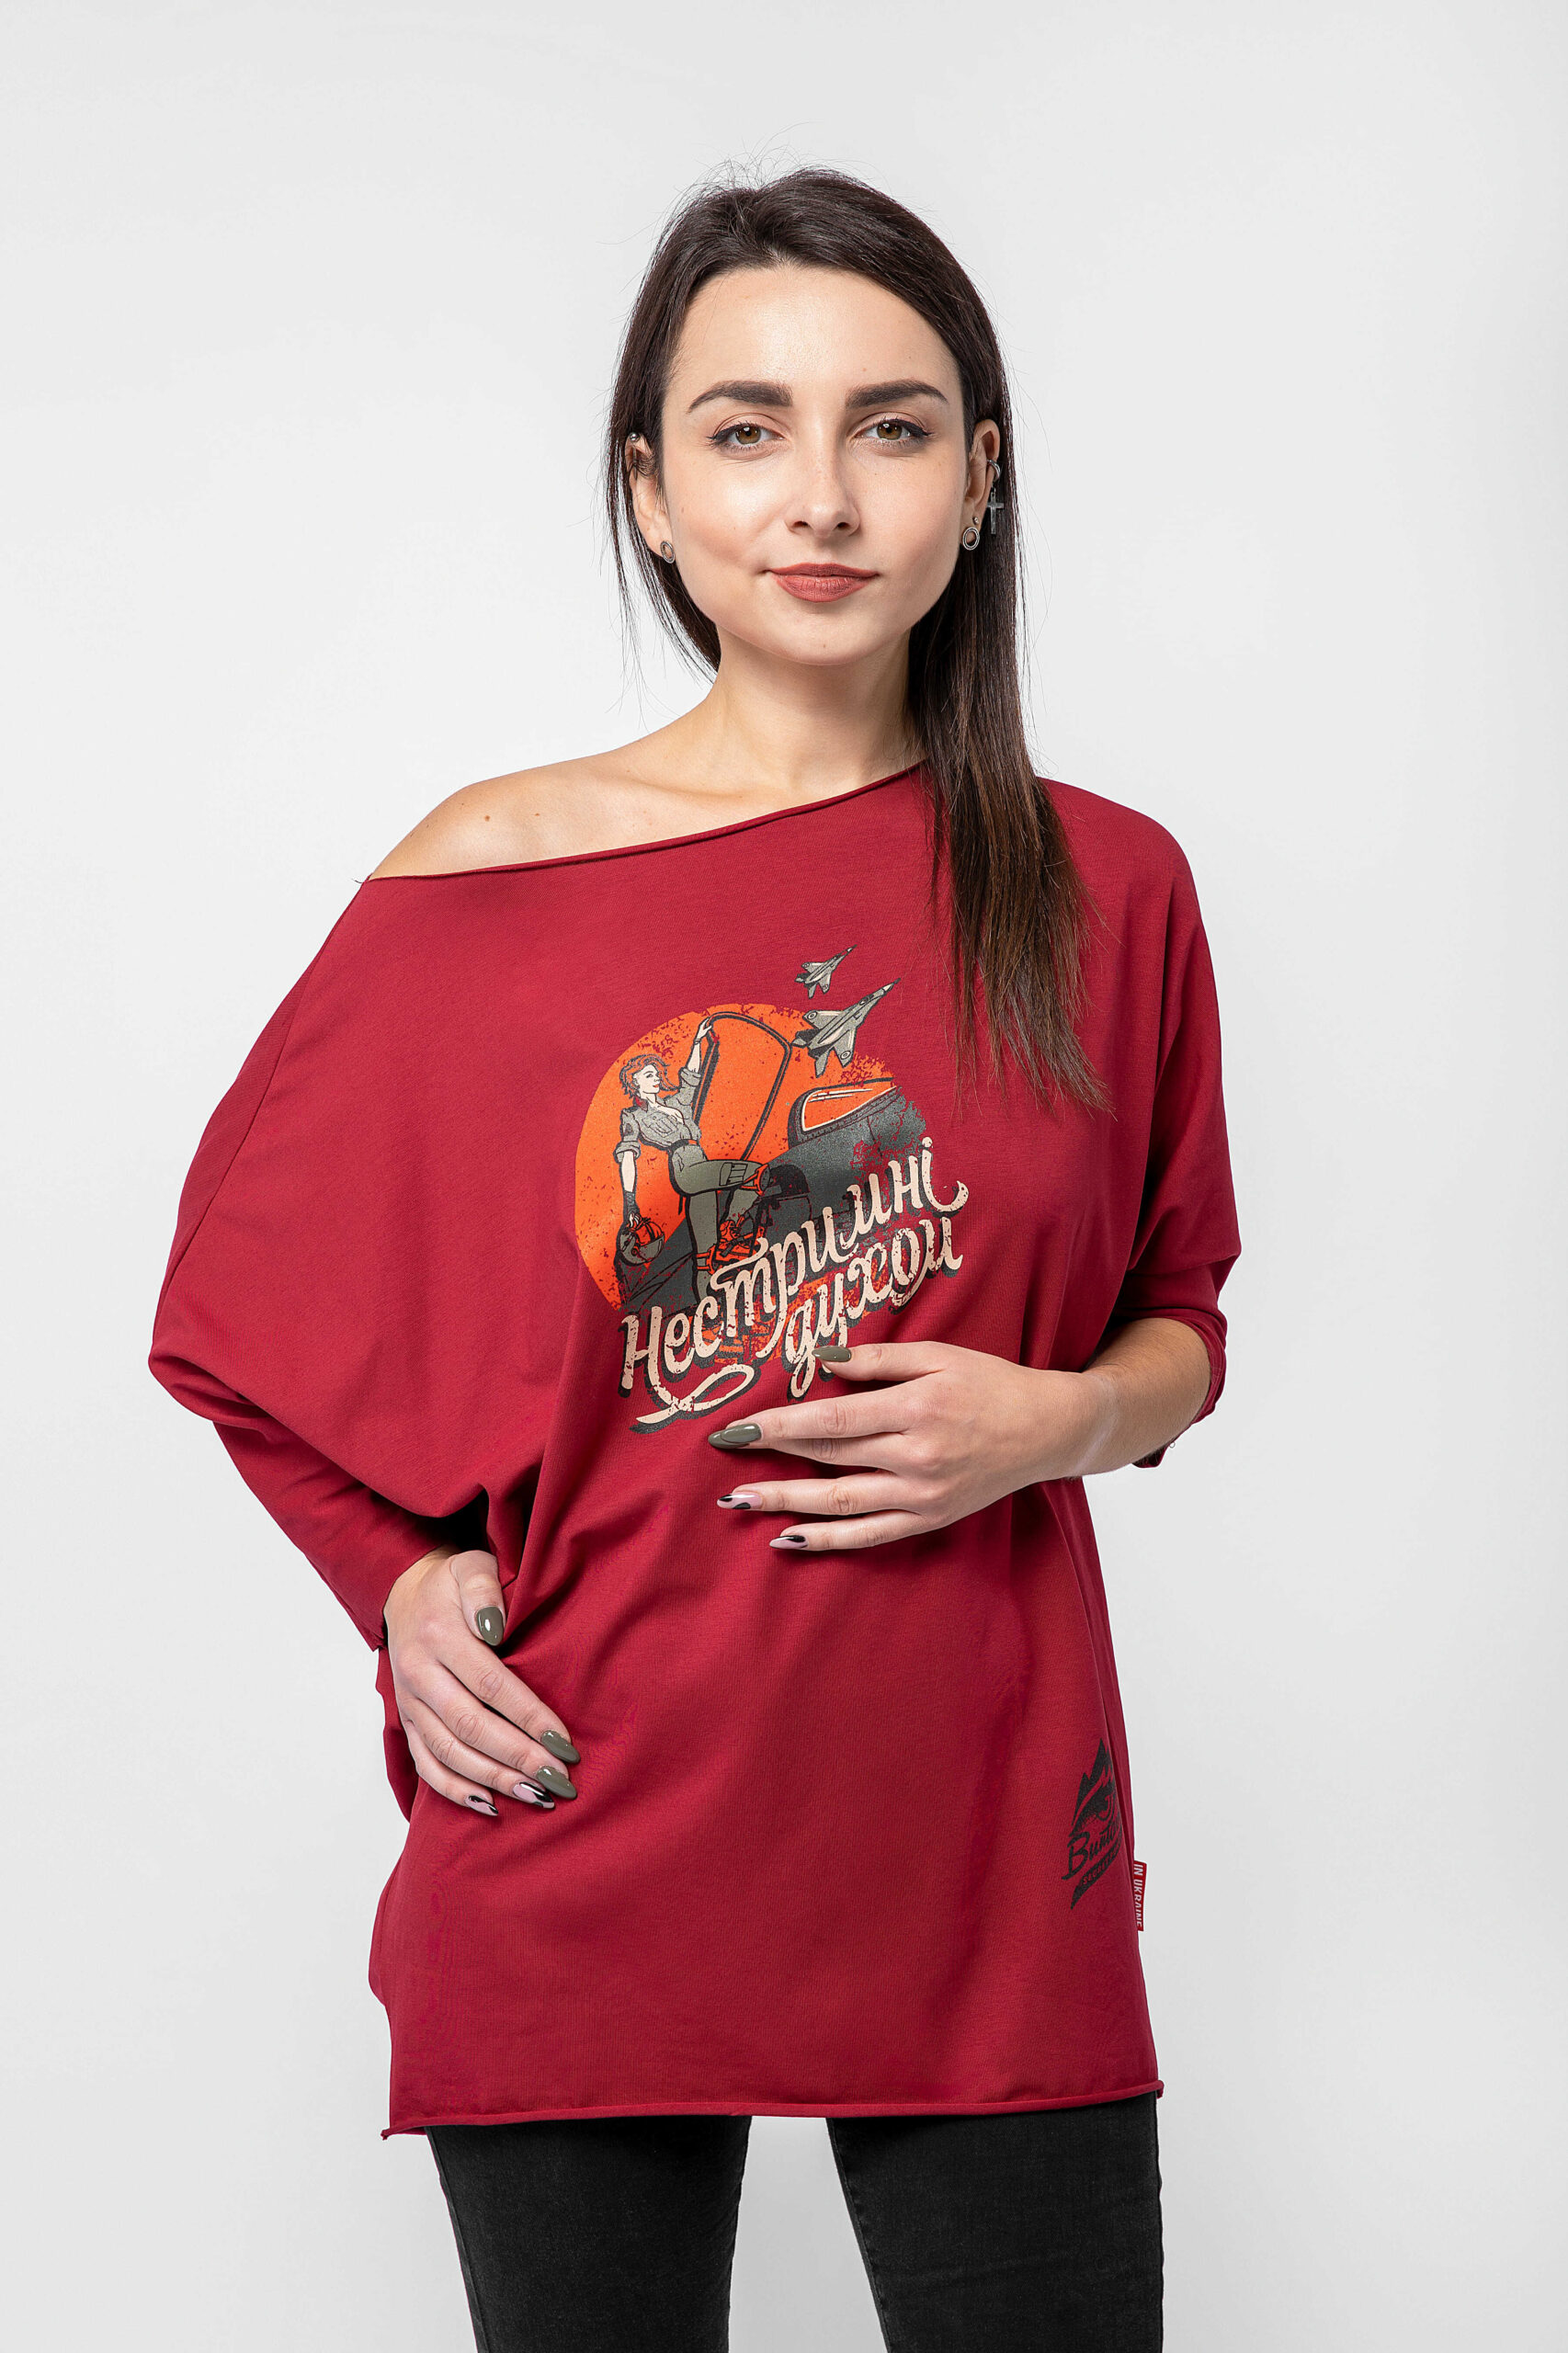 Women's T-Shirt Rebellious Spirit. Color claret. Material: 95% cotton, 5% spandex.